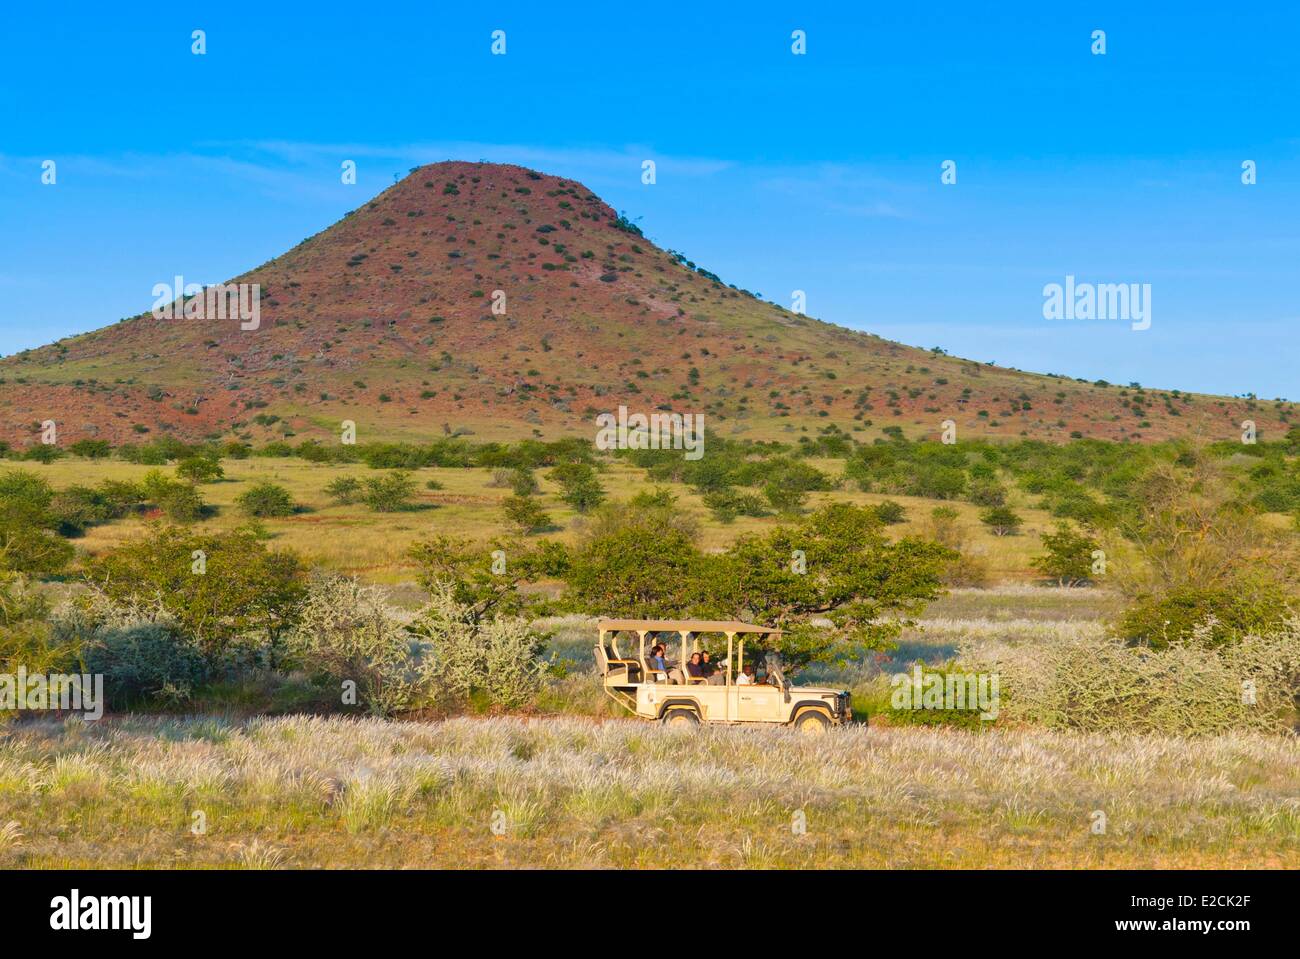 Namibia, Kunene region, Damaraland Stock Photo